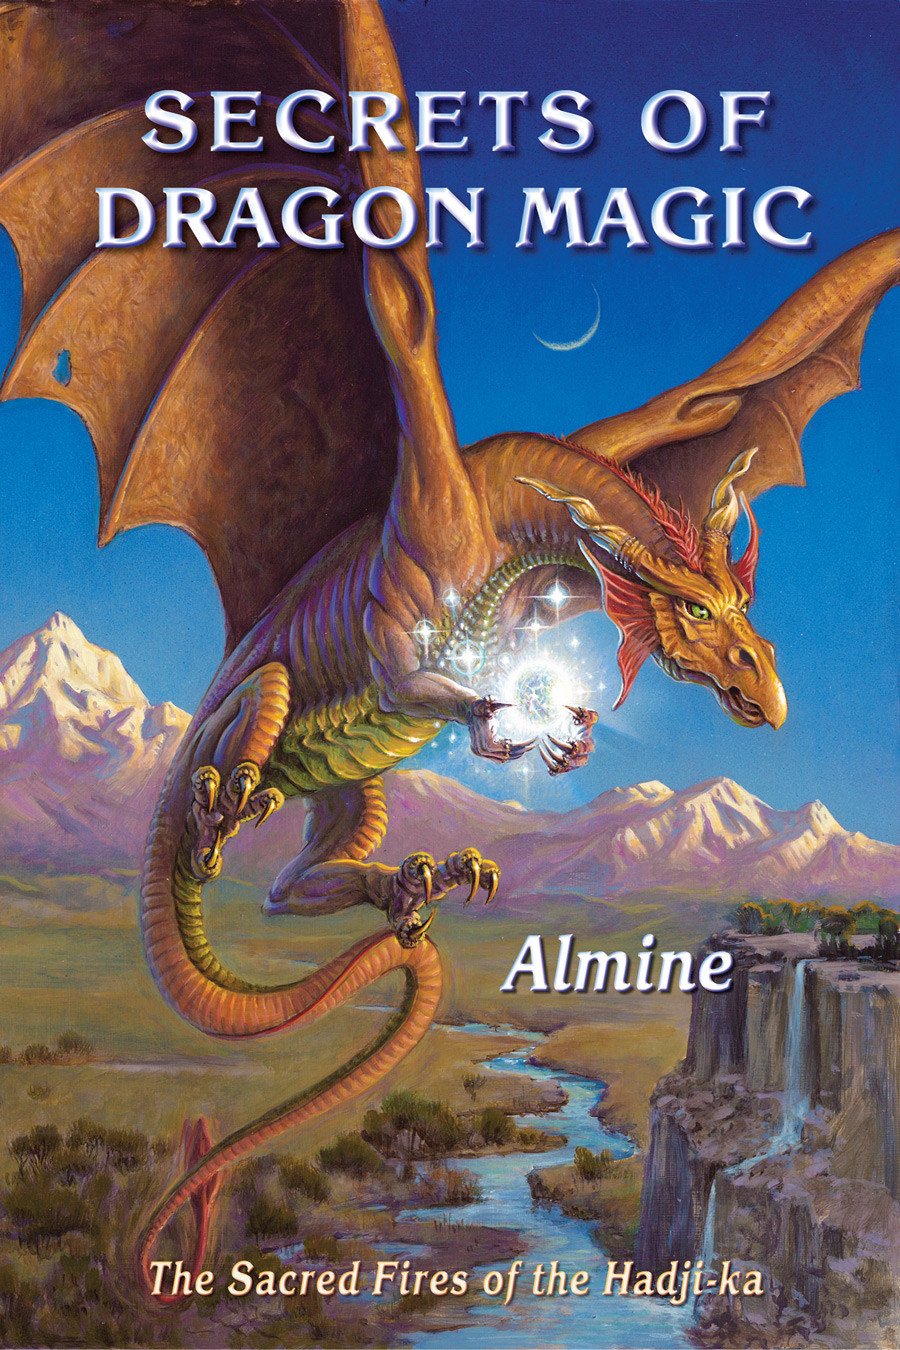 Читать книгу про драконов и любовь. Дракон магии. Книга дракона. Книги про драконов и магию. Книга с драконом на обложке.